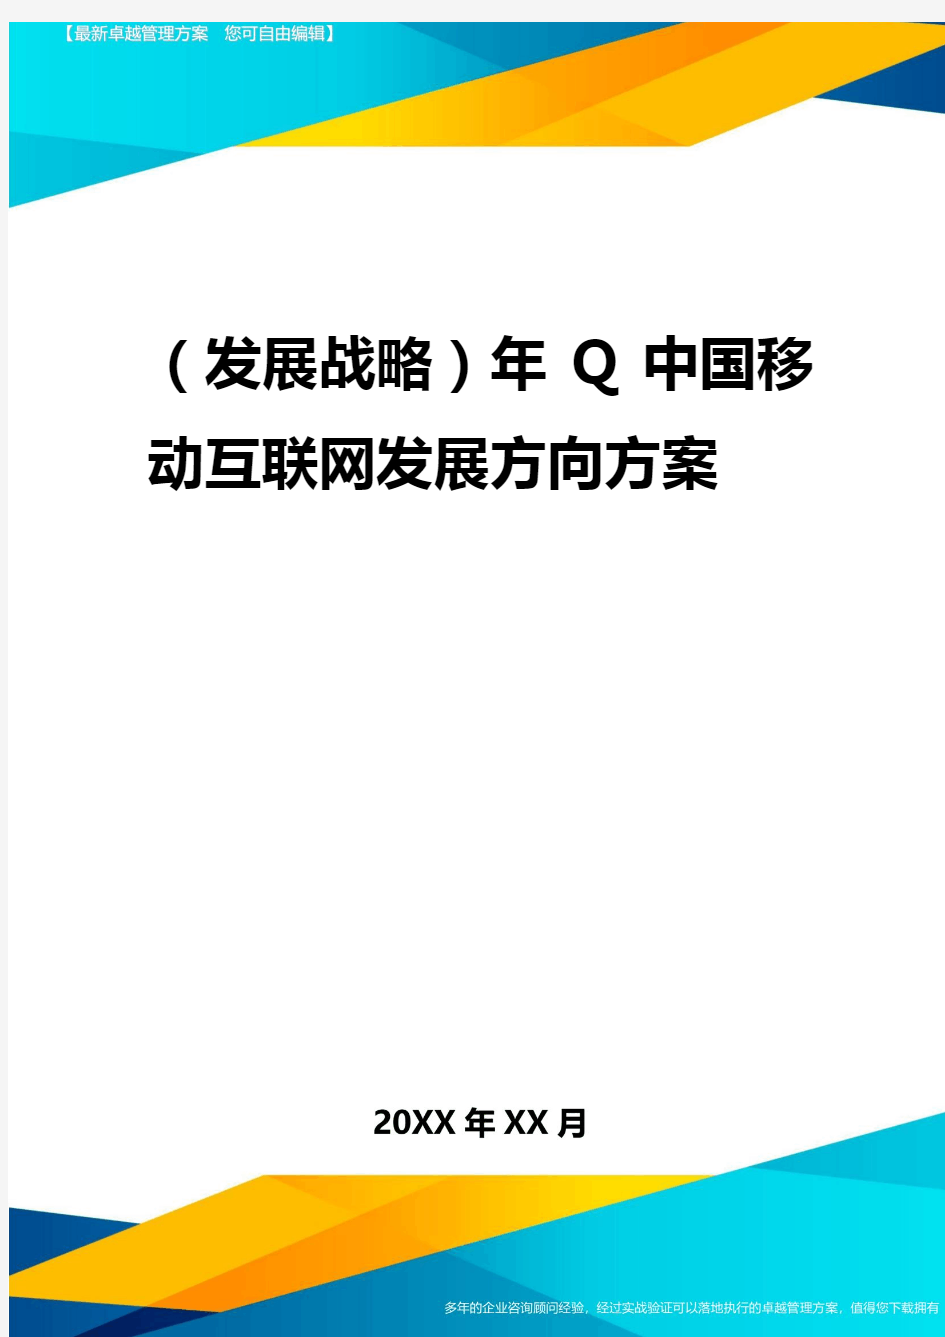 2020年(发展战略)年Q中国移动互联网发展方向报告